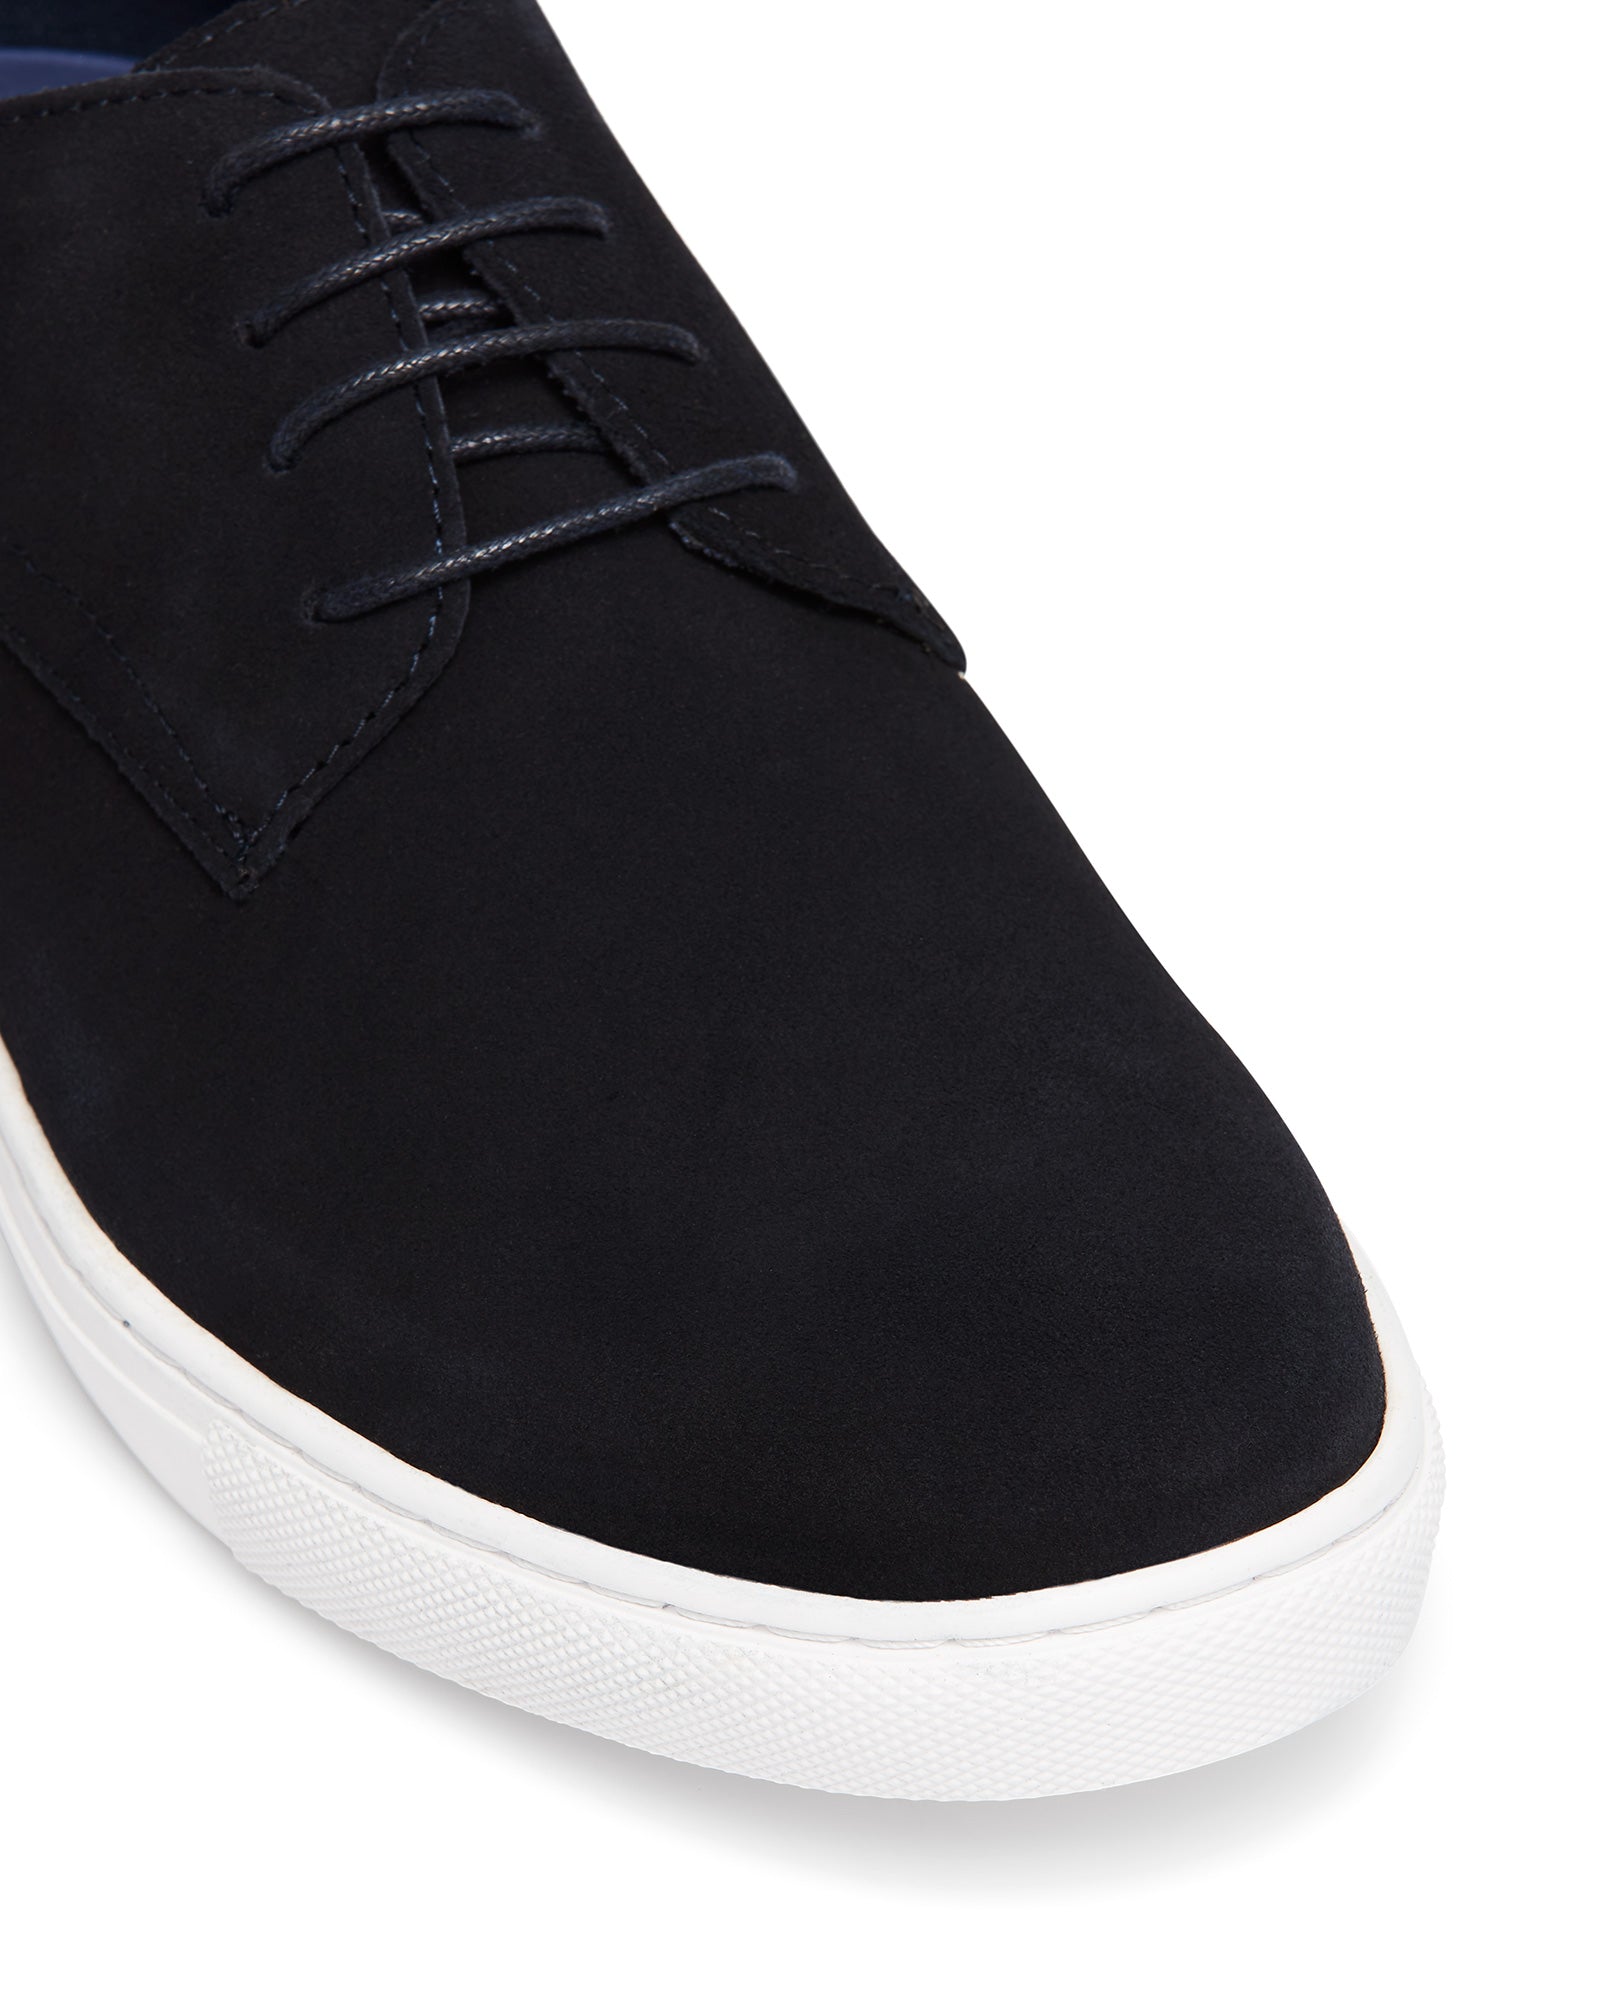 Uncut Shoes Riptide Navy | Men's Sneaker | Low Top | Lace Up | Leather